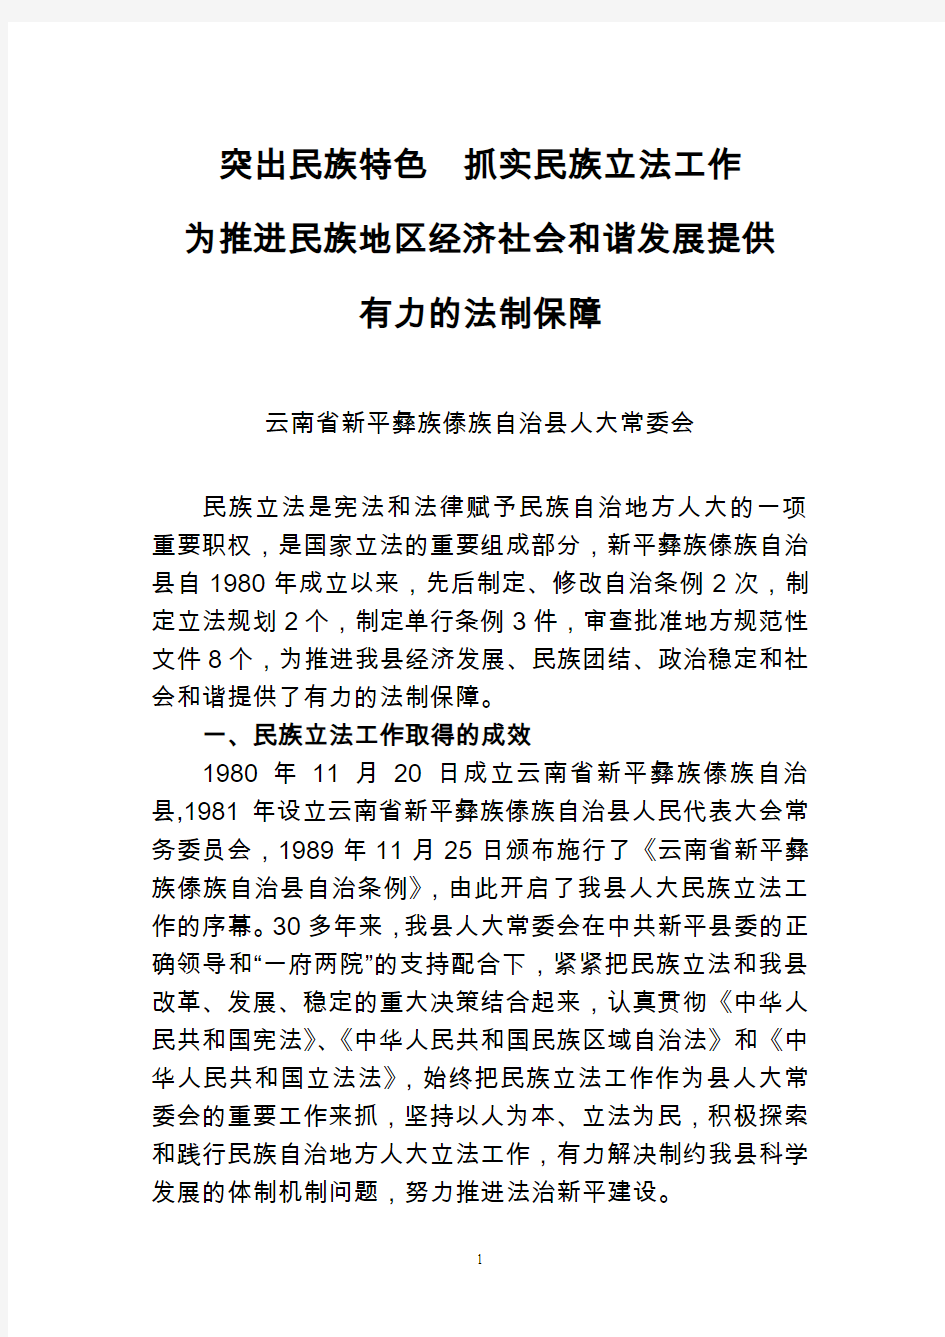 民族立法经验交流材料---云南省新平县